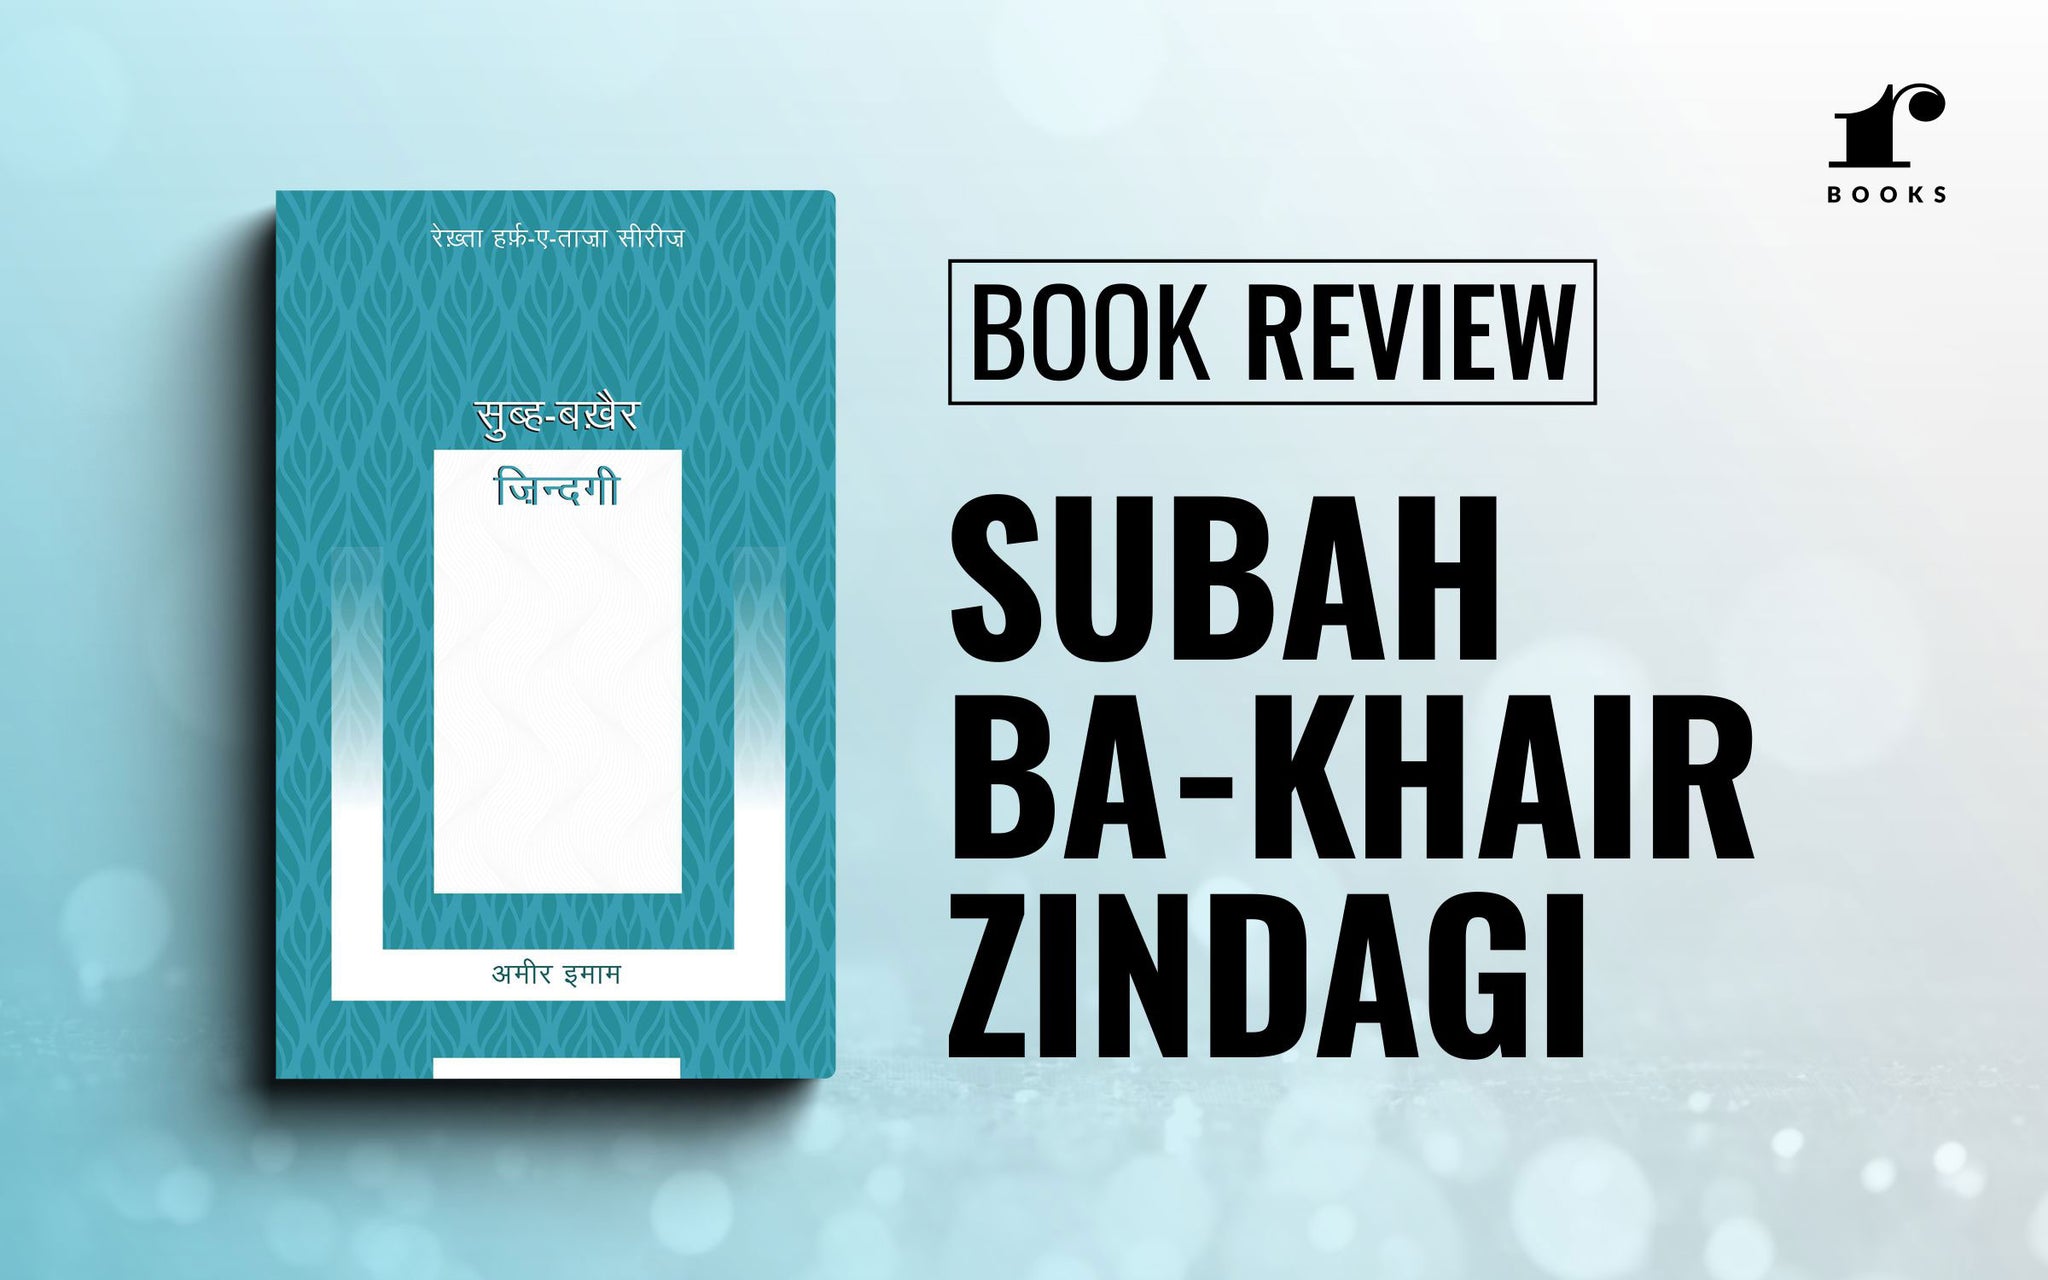 Book Review: Subah Ba-Khair Zindagi